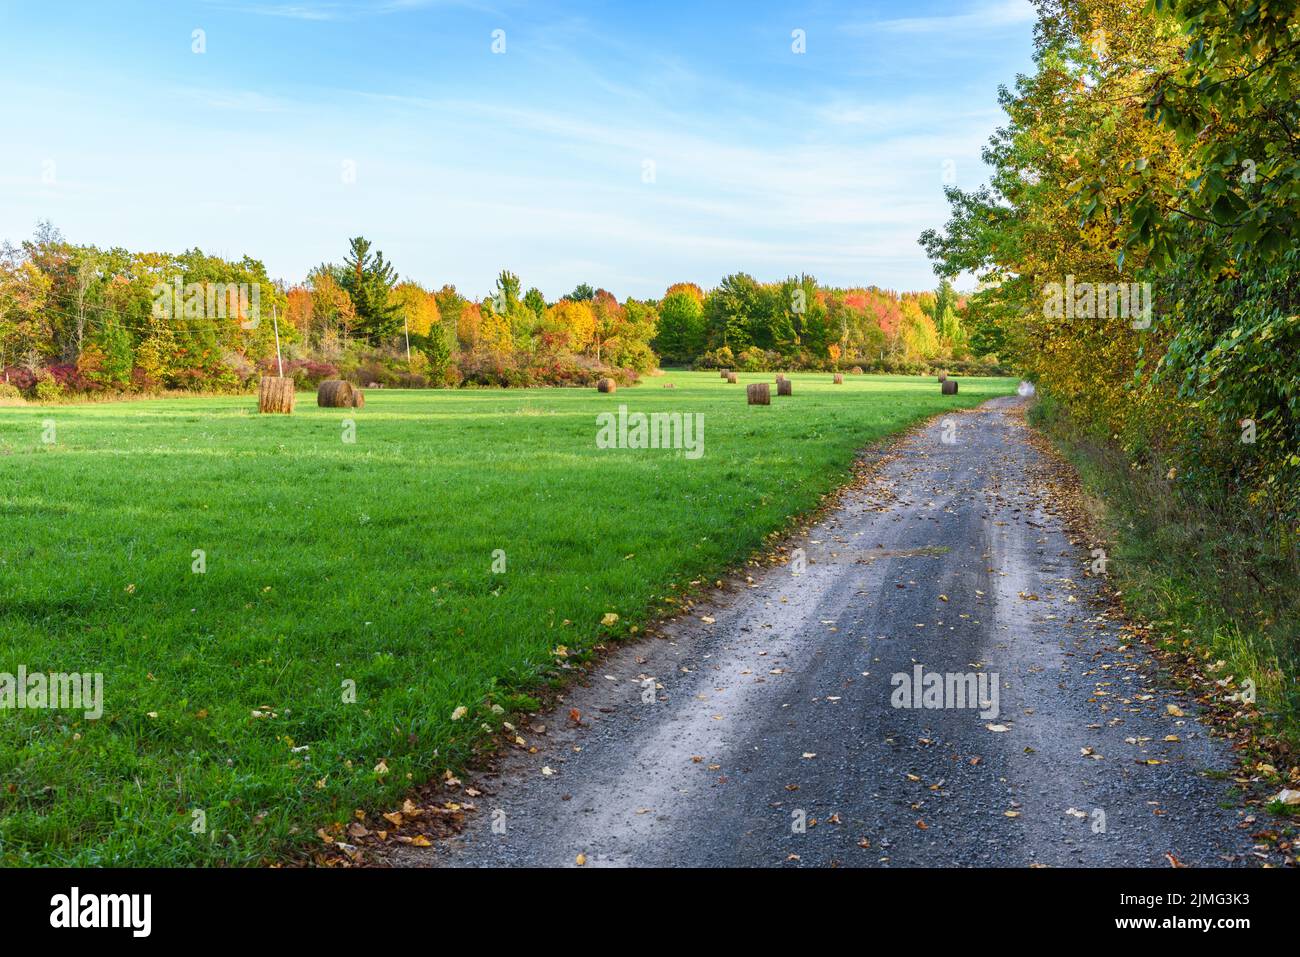 Schotterstraße entlang eines Grasfeldes, das mit Heuballen übersät ist und an einem sonnigen Tag von einem Laubwald umgeben ist Stockfoto